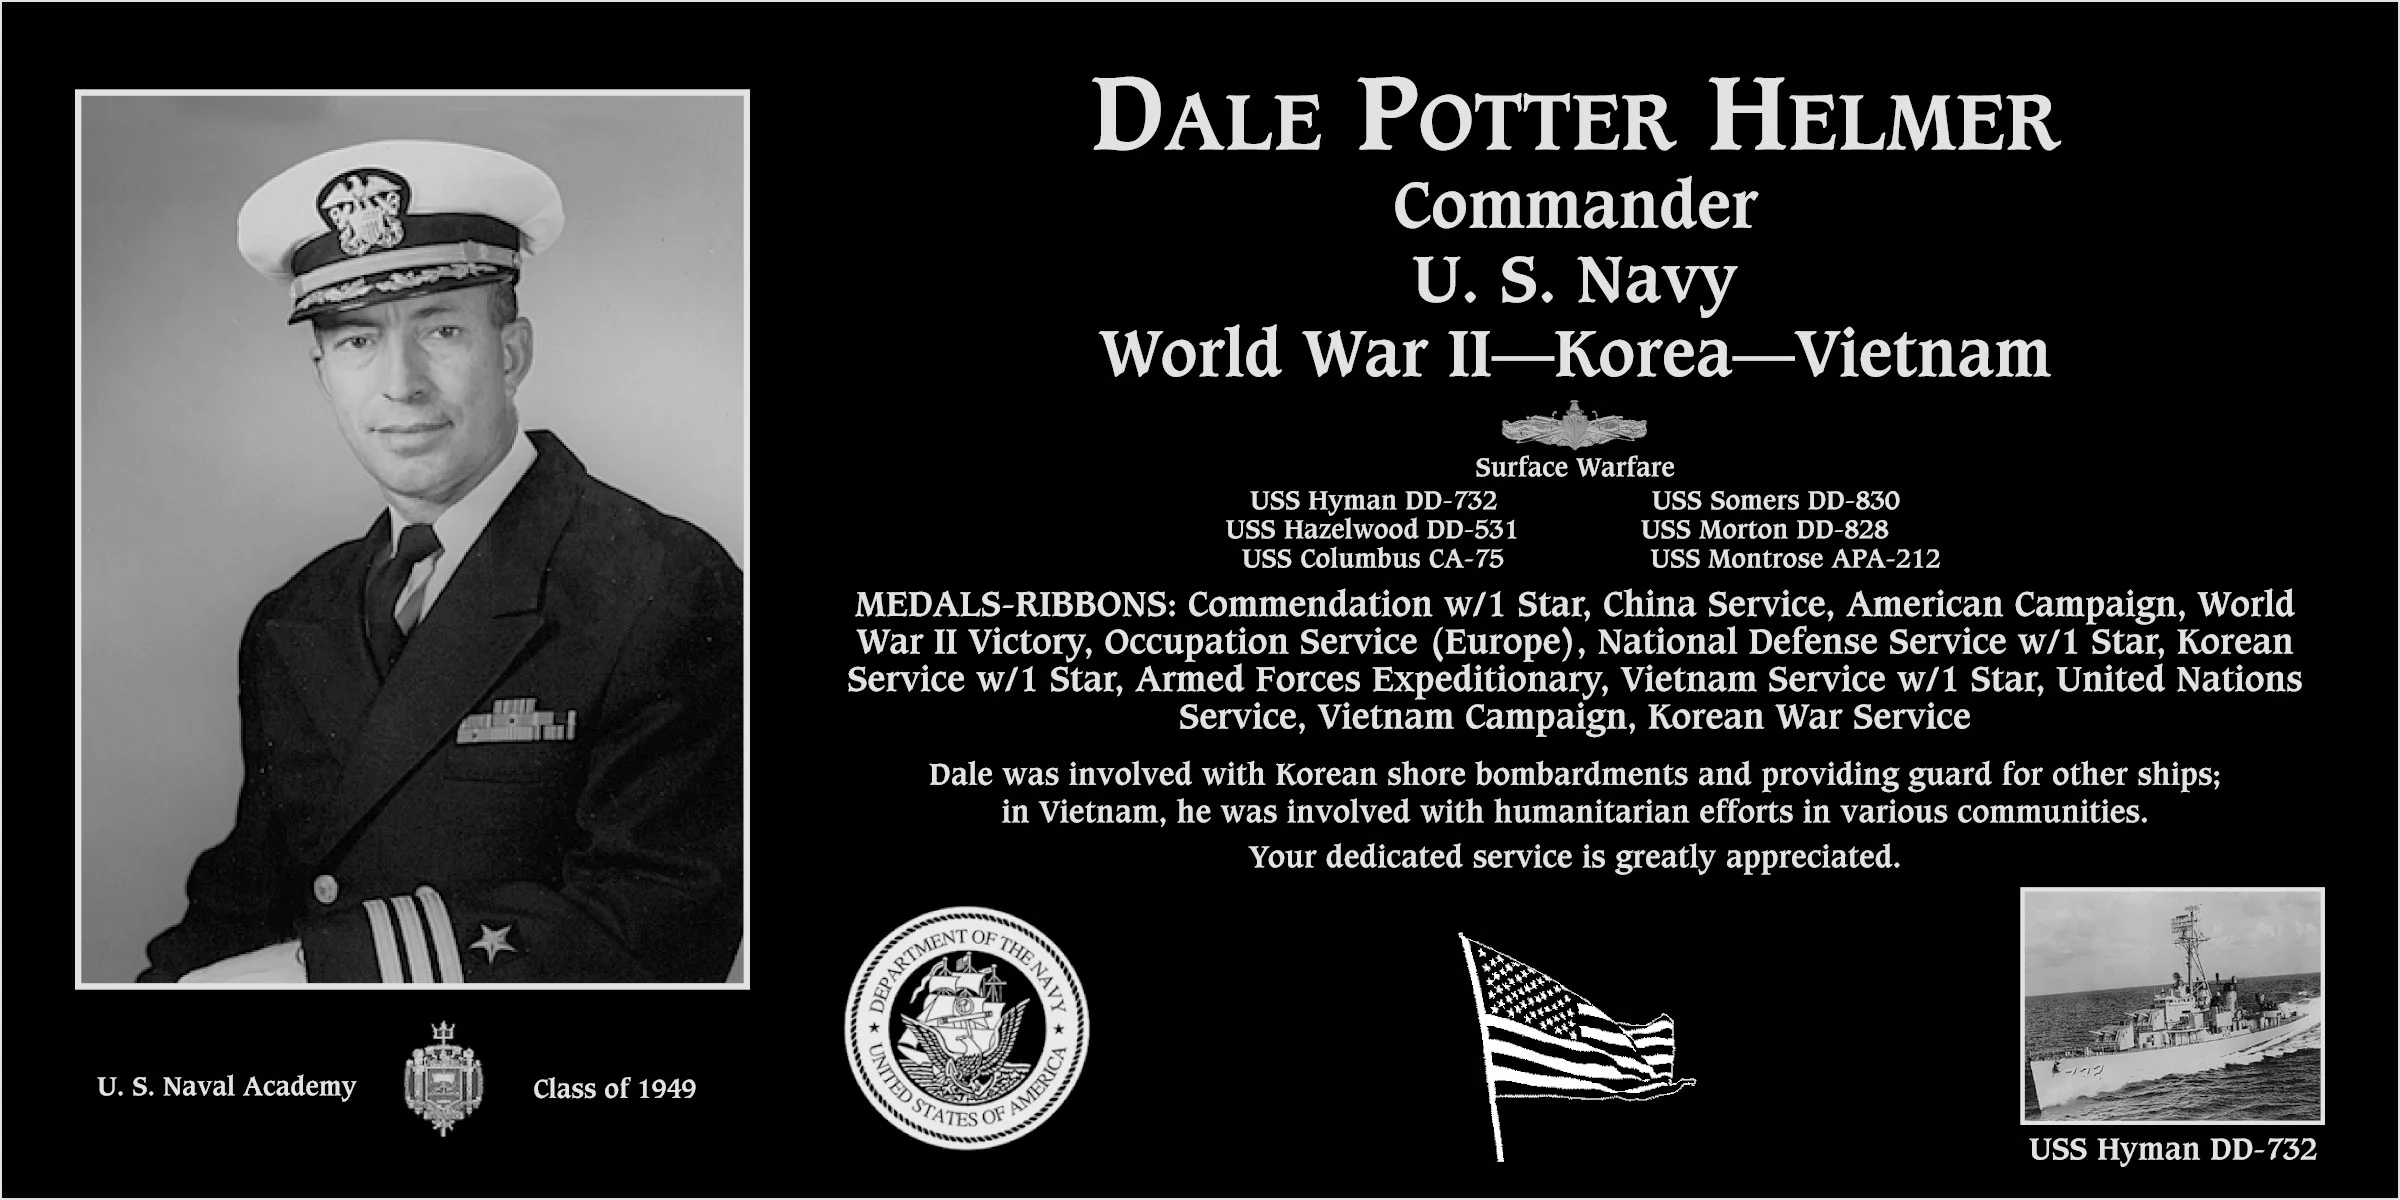 Dale Potter Helmer